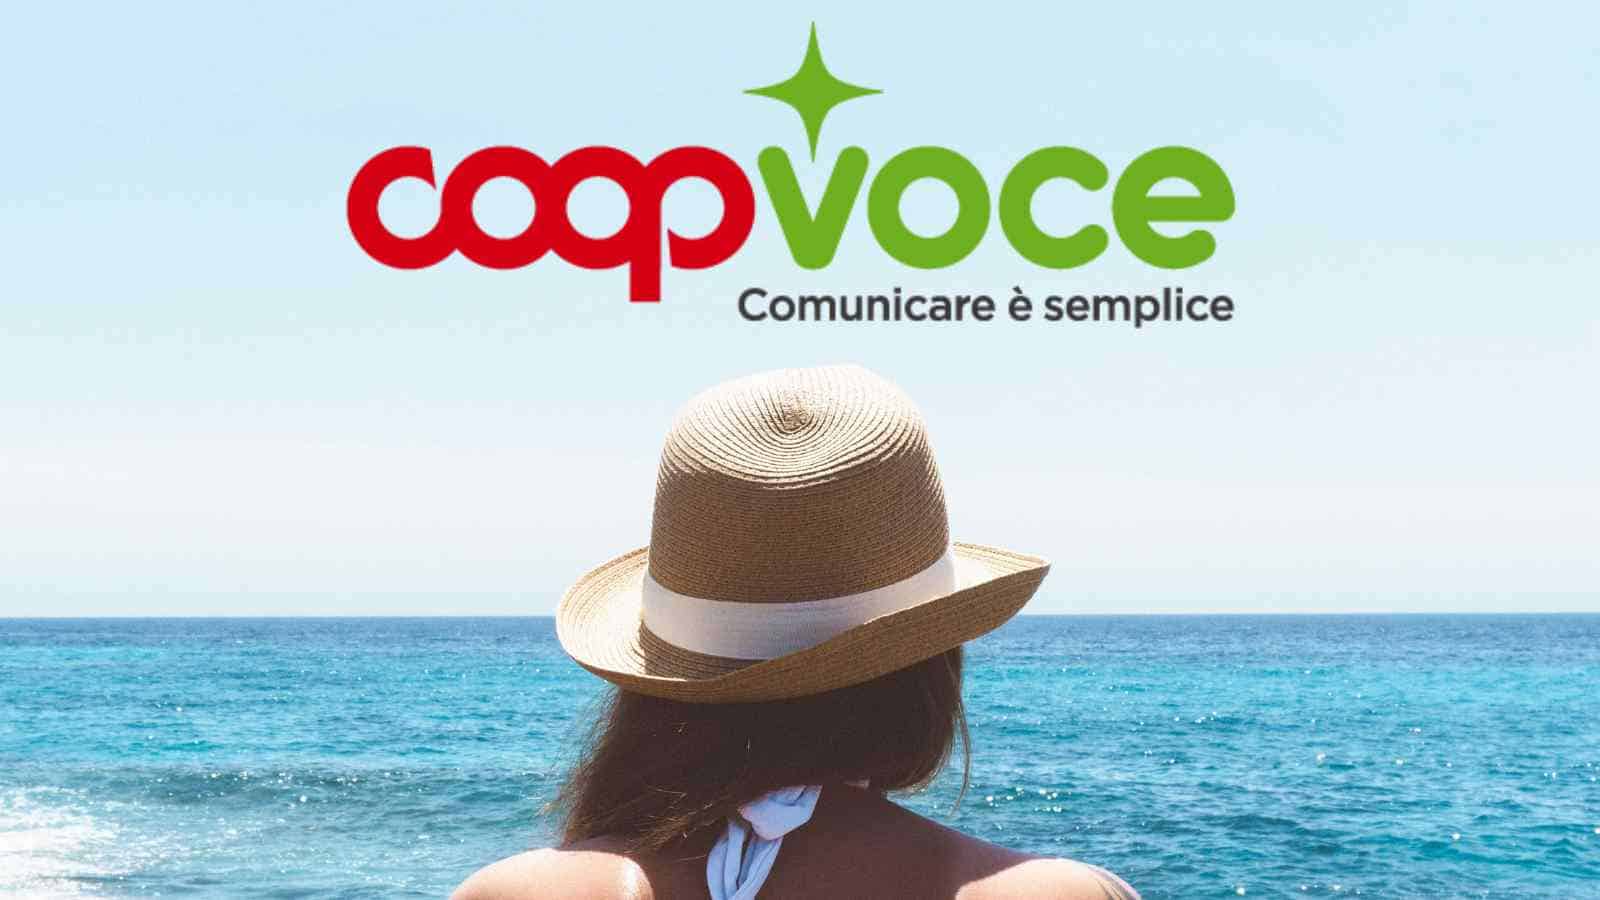 CoopVoce lancia Evo 10, con minuti illimitati, 1000 SMS al mese e 10 Giga di traffico internet a soli 4,90 euro al mese!